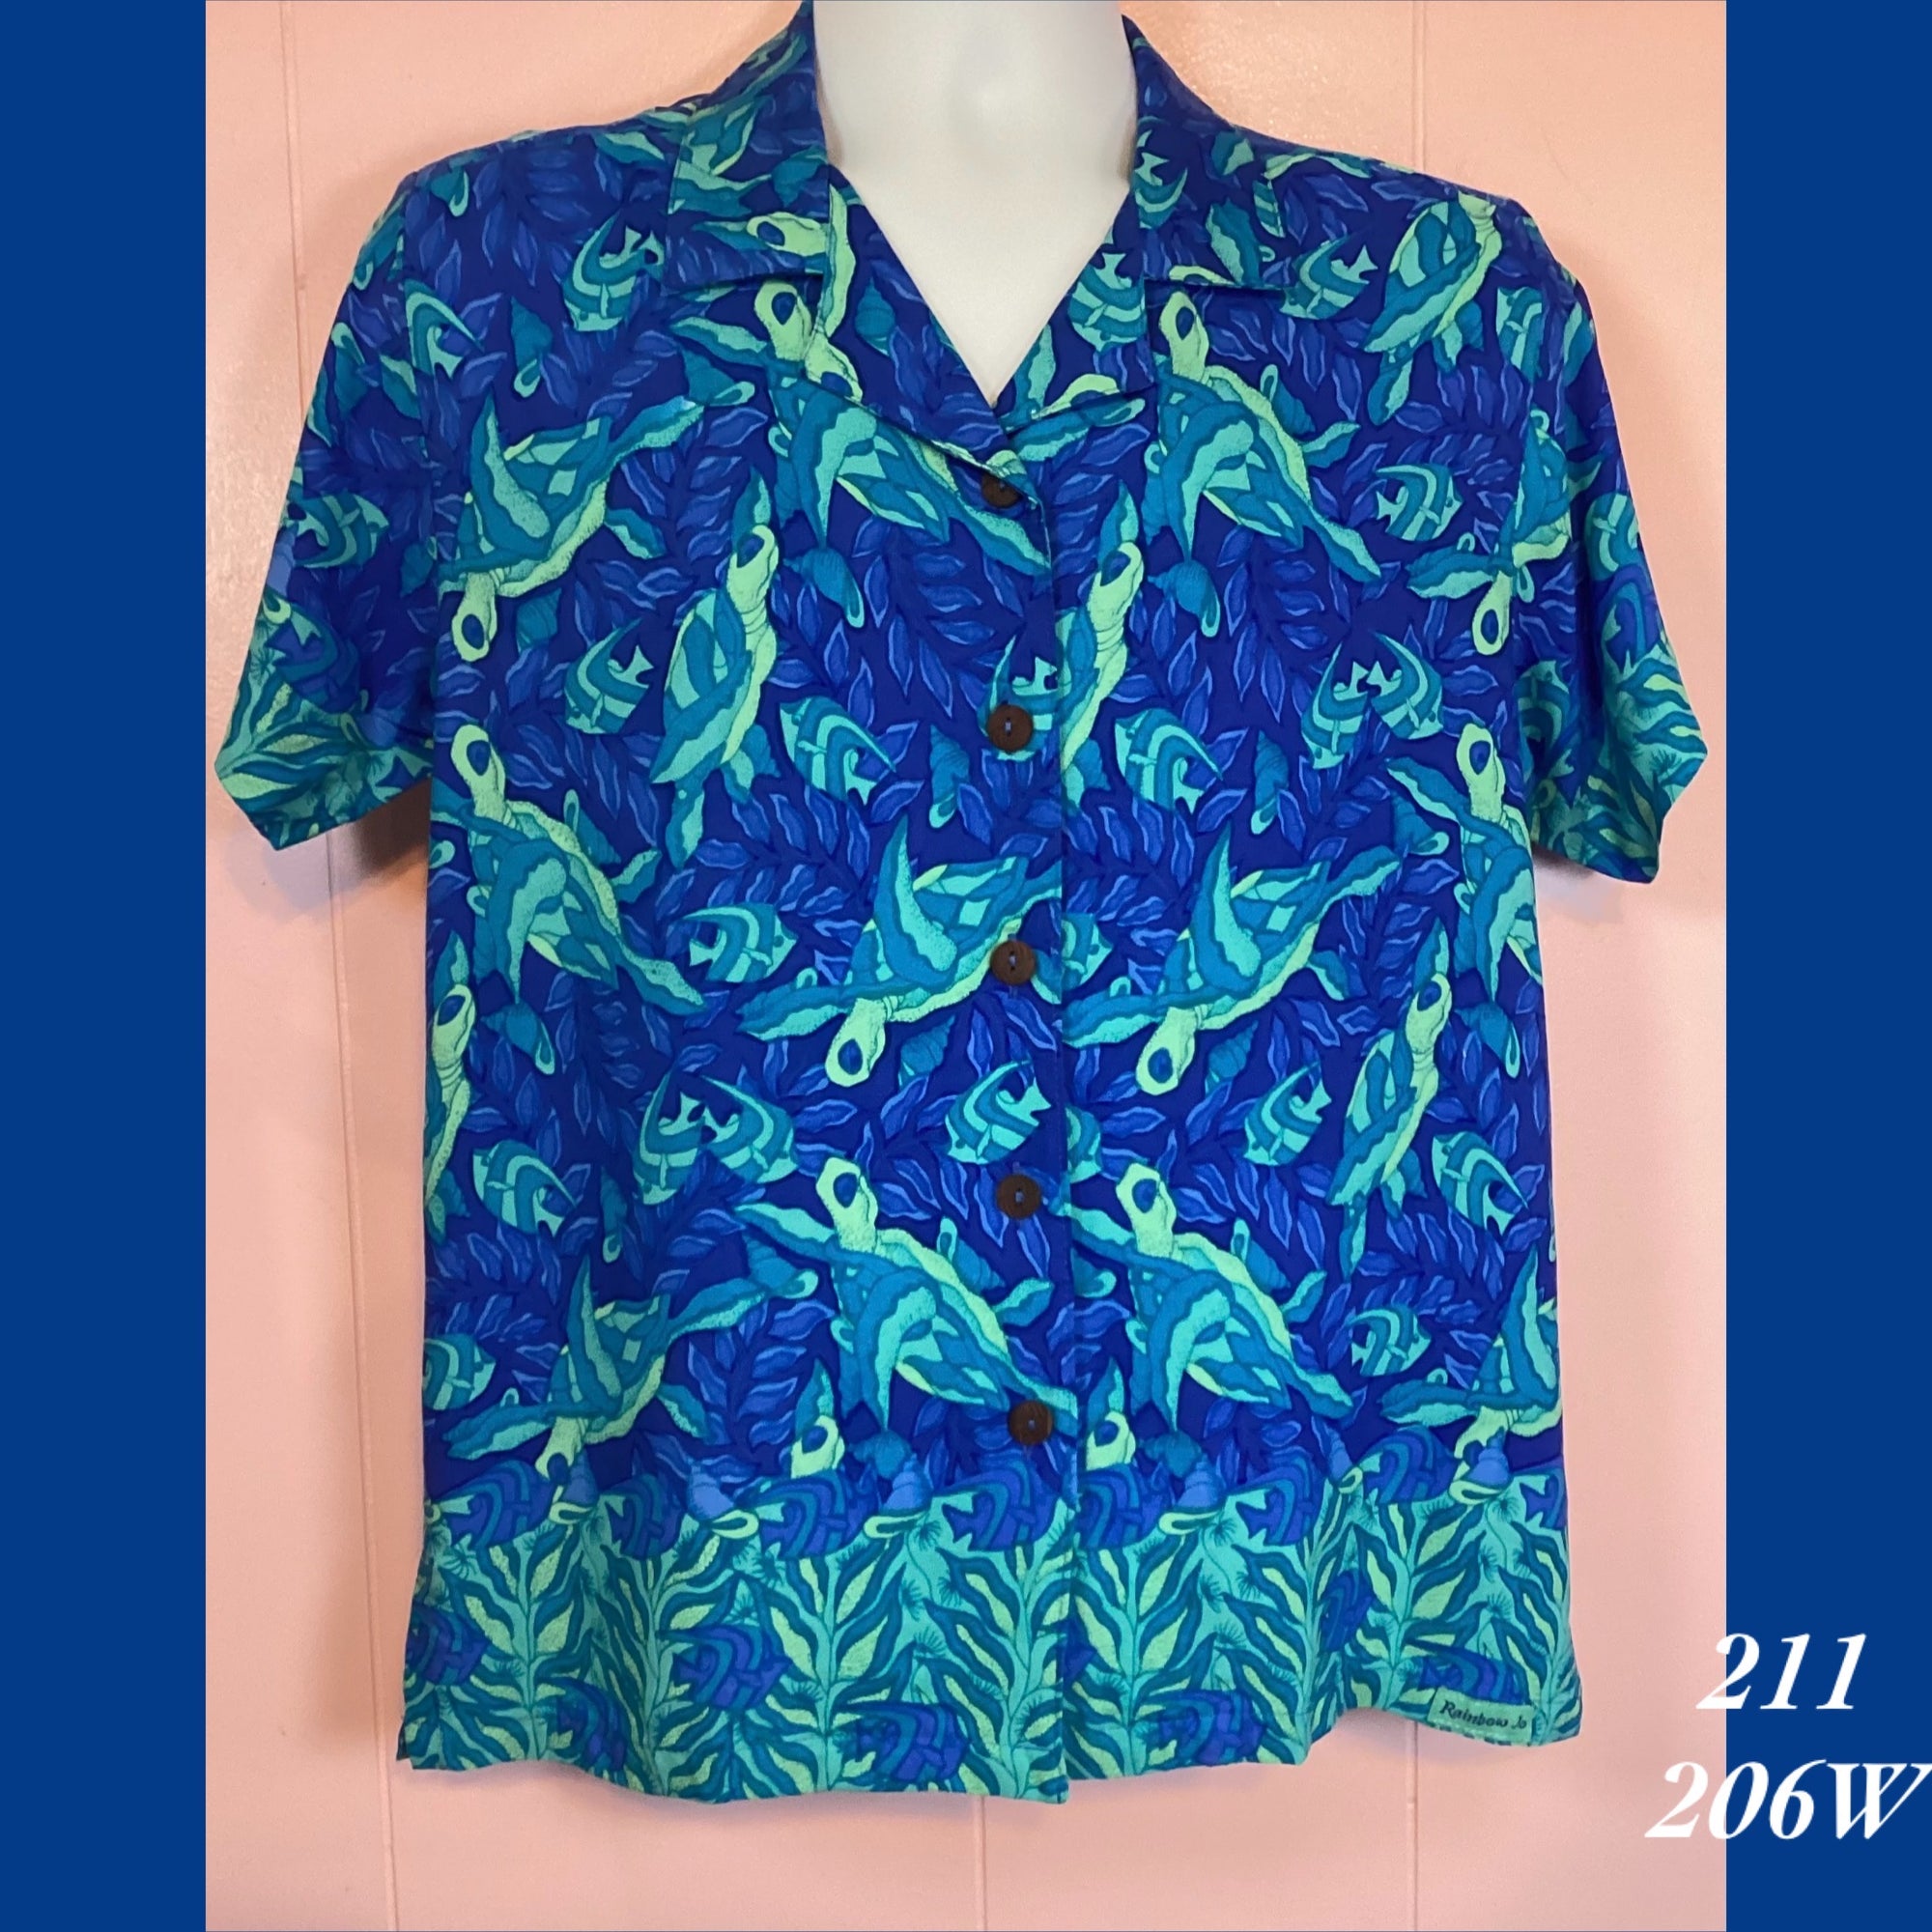 211 - 206W , Women's Aloha shirt